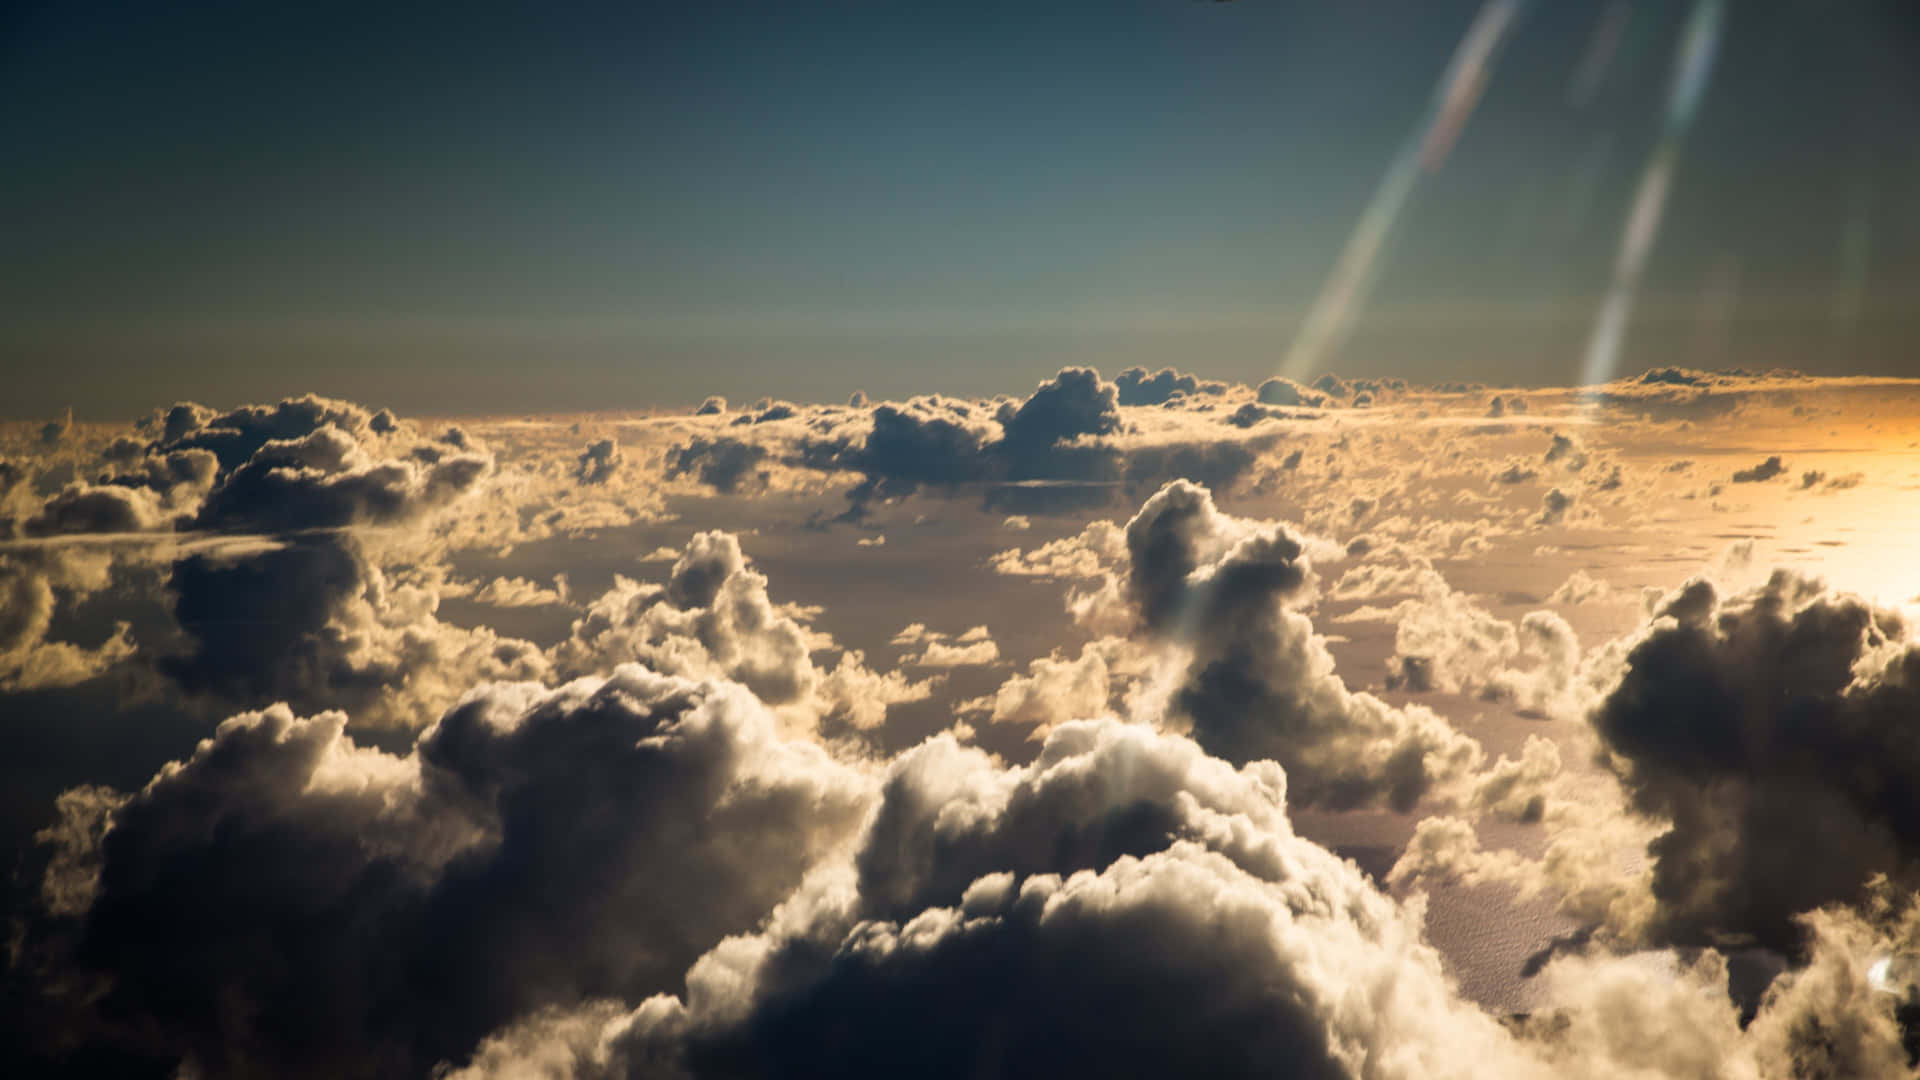 Cieloimpresionante Lleno De Majestuosas Nubes Blancas. Fondo de pantalla